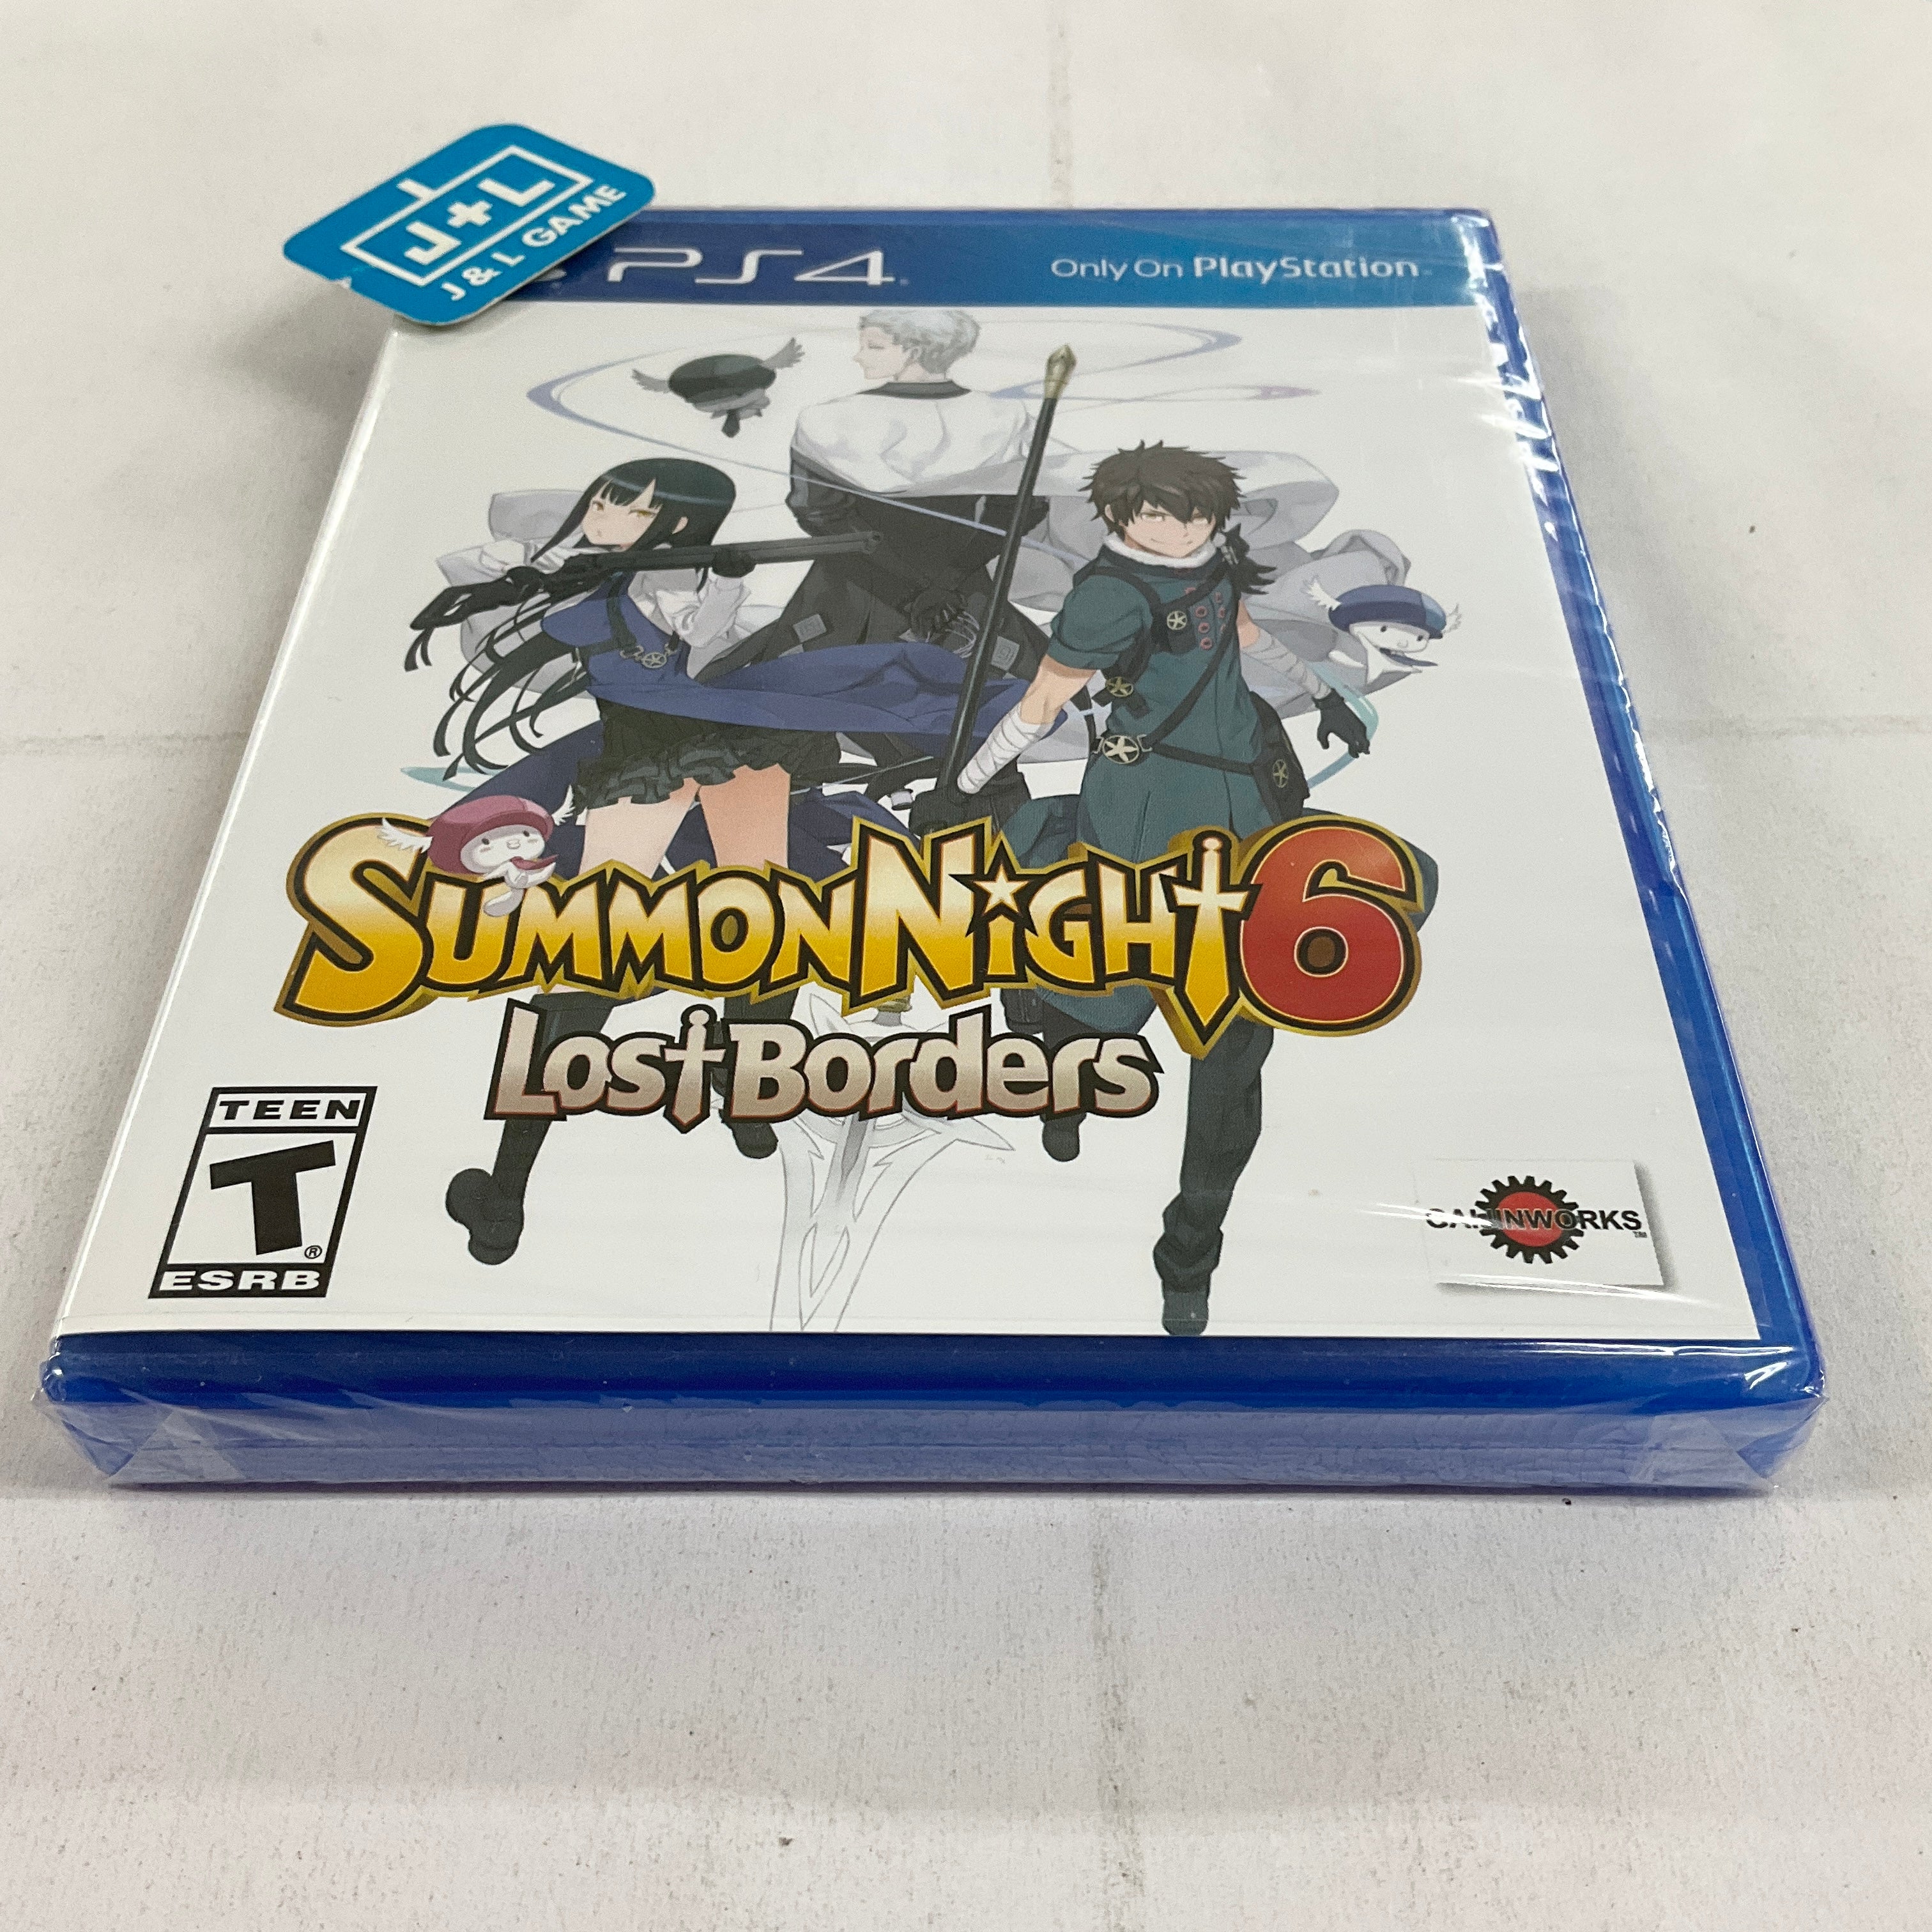 Summon Night 6 Lost Borders - (PS4) PlayStation 4 Video Games Bandai Namco Games   